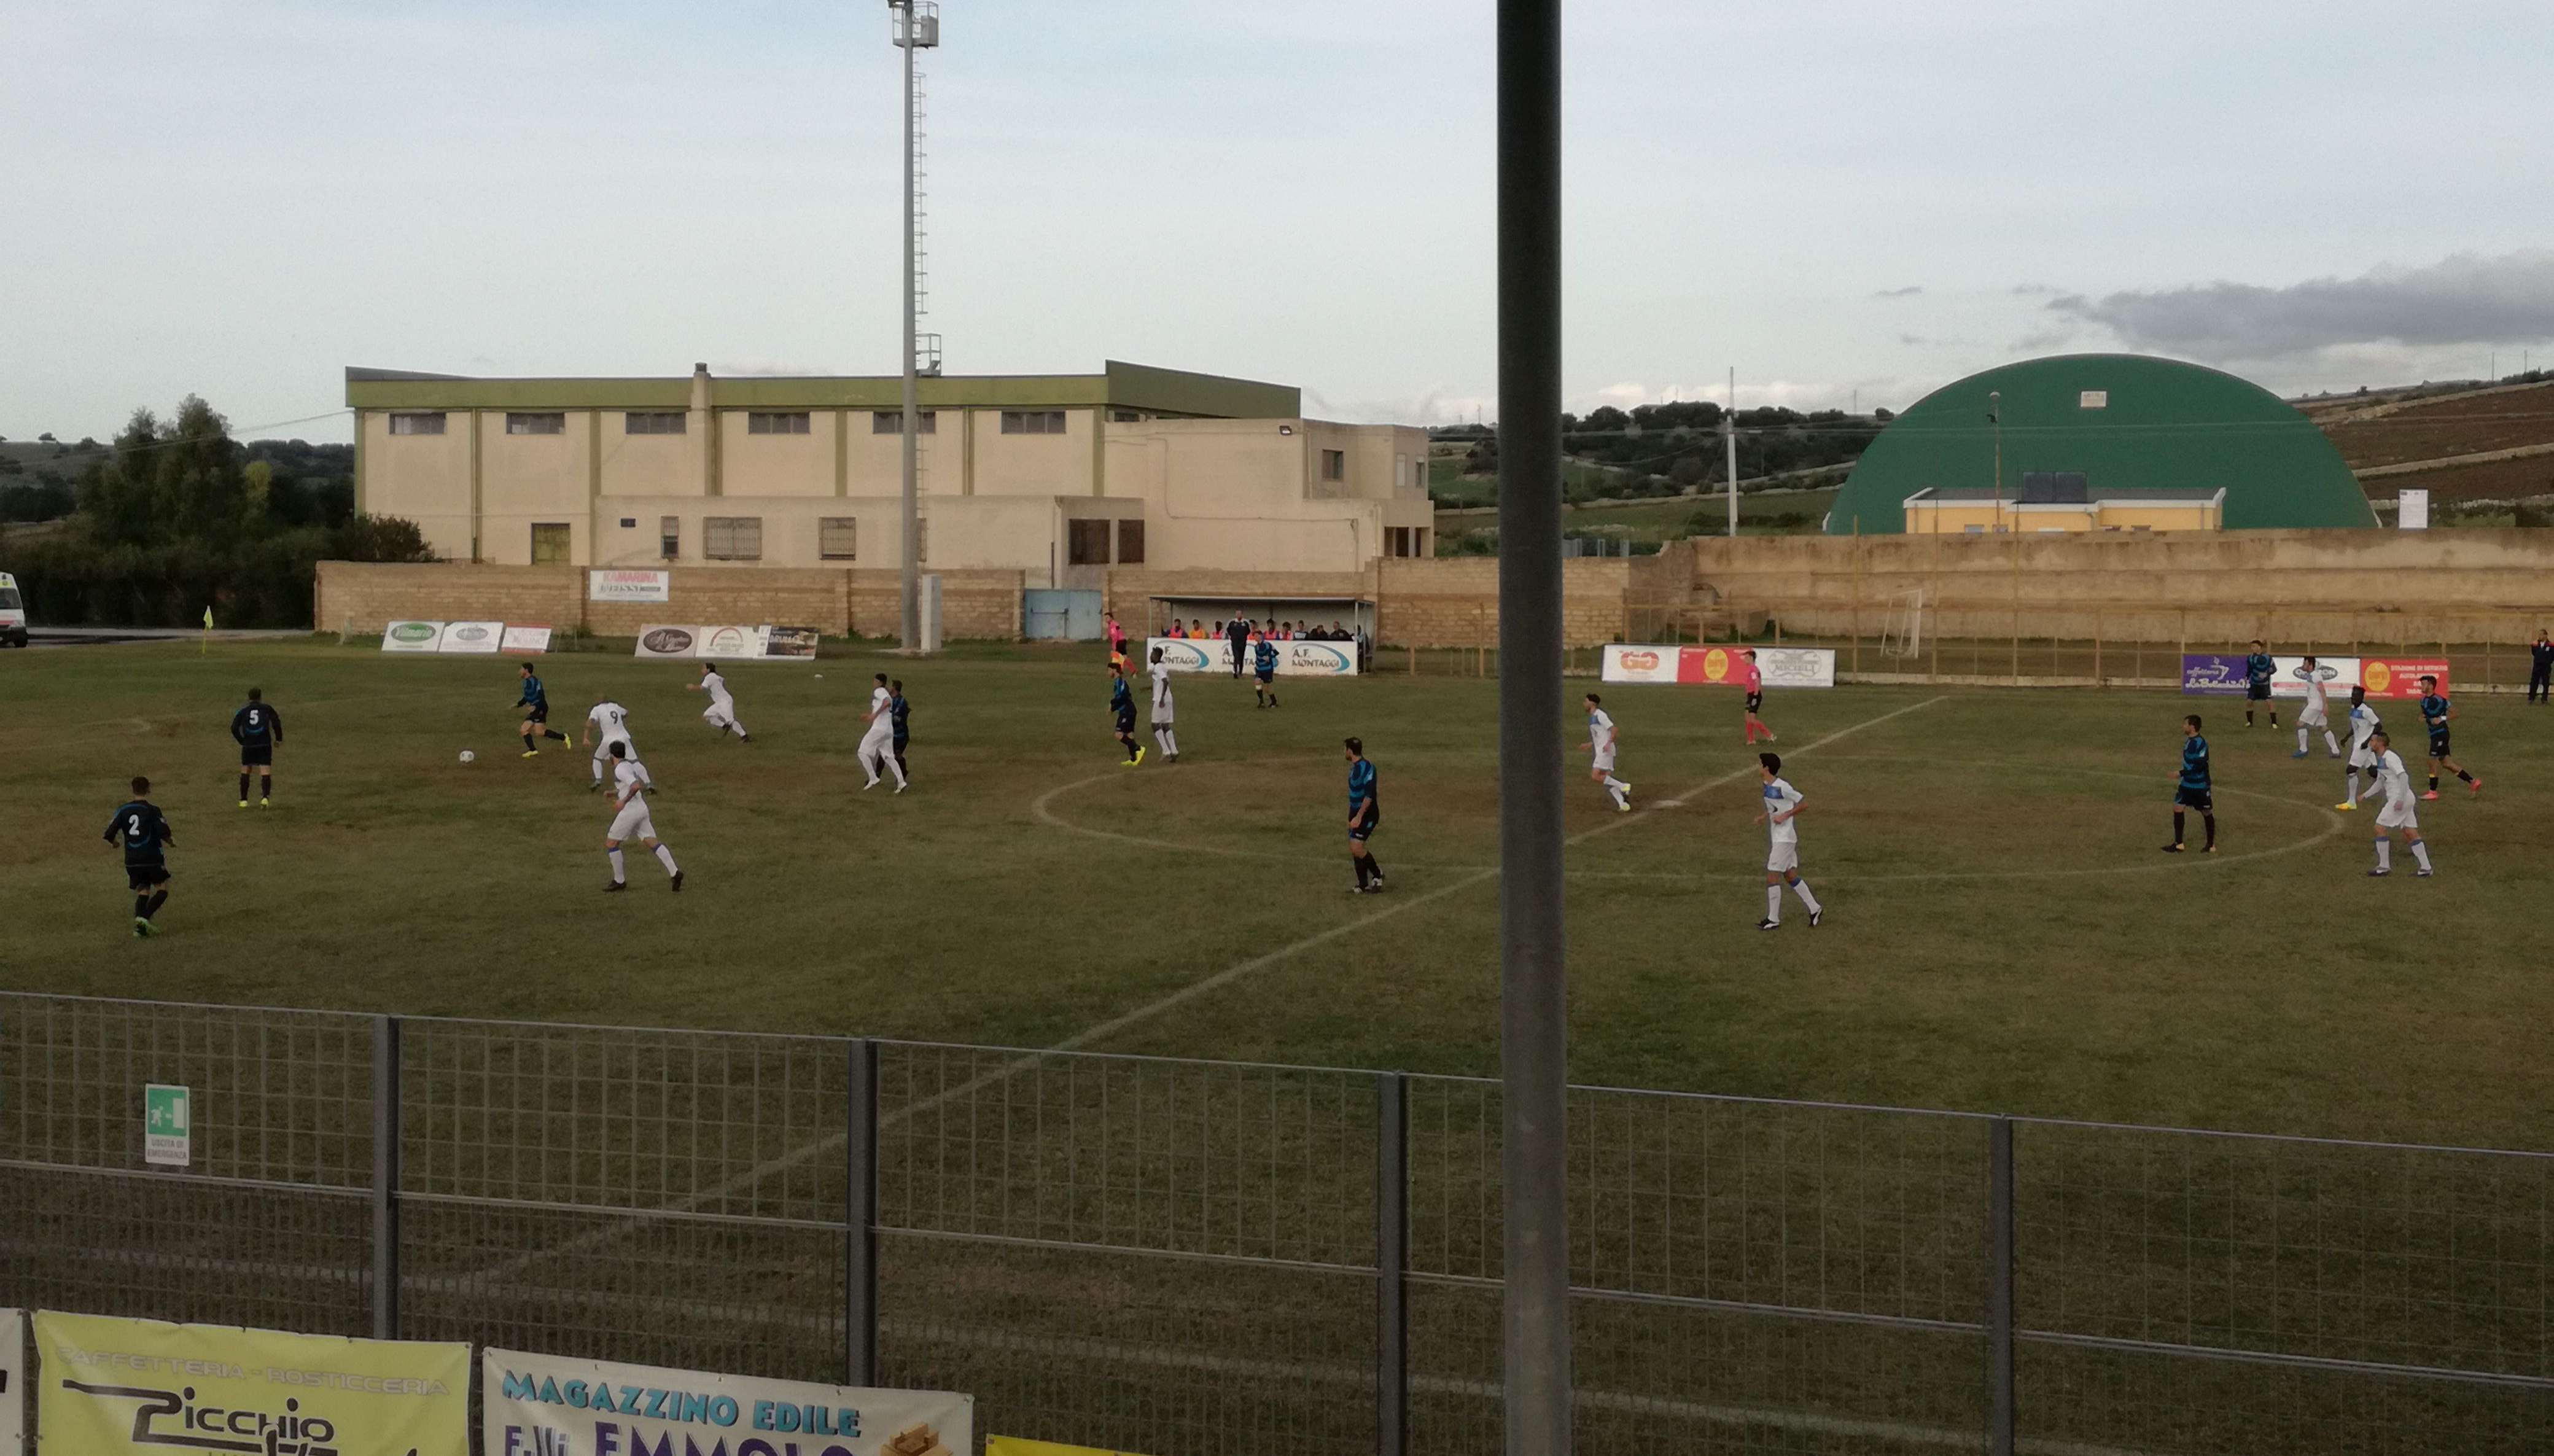  Calcio, Promozione: il Santa Croce si sgonfia, solo 1-1 contro il Belvedere